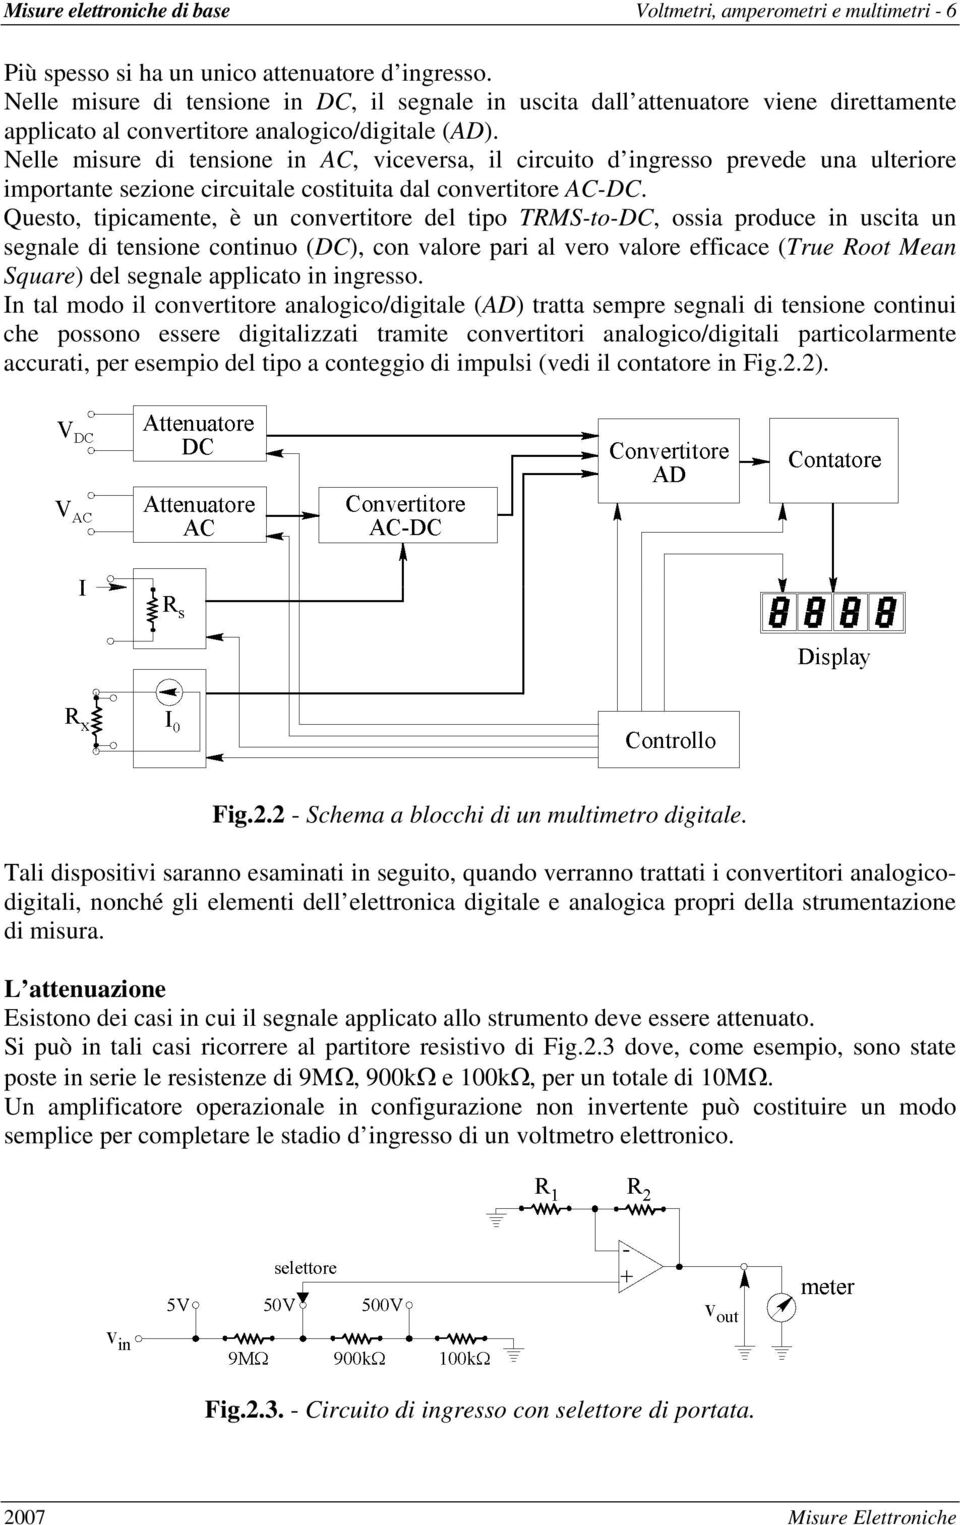 Nelle misure di tensione in AC, viceversa, il circuito d ingresso prevede una ulteriore importante sezione circuitale costituita dal convertitore AC-DC.